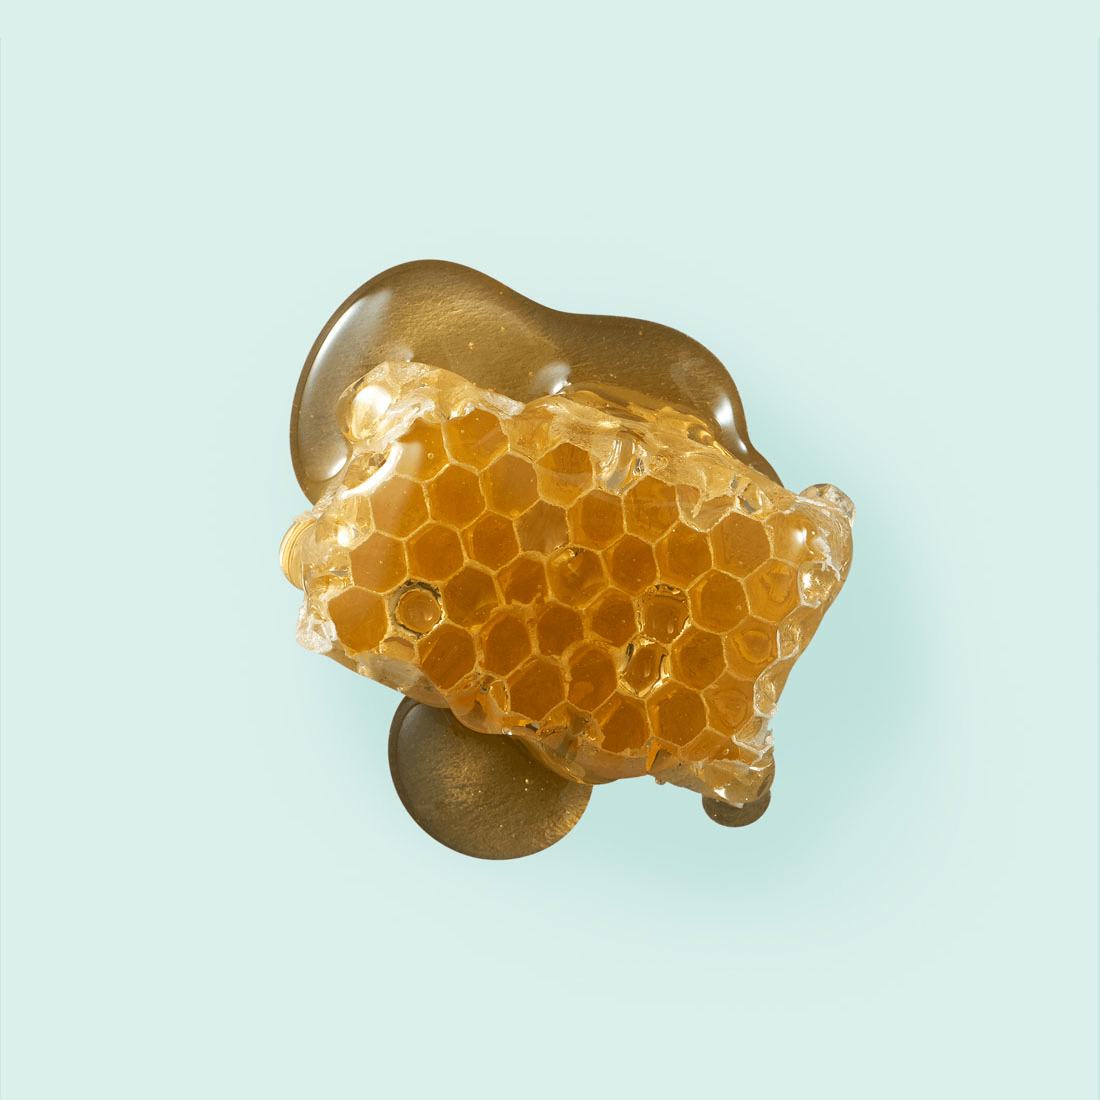 Cera de abeja para la piel: propiedades y beneficios